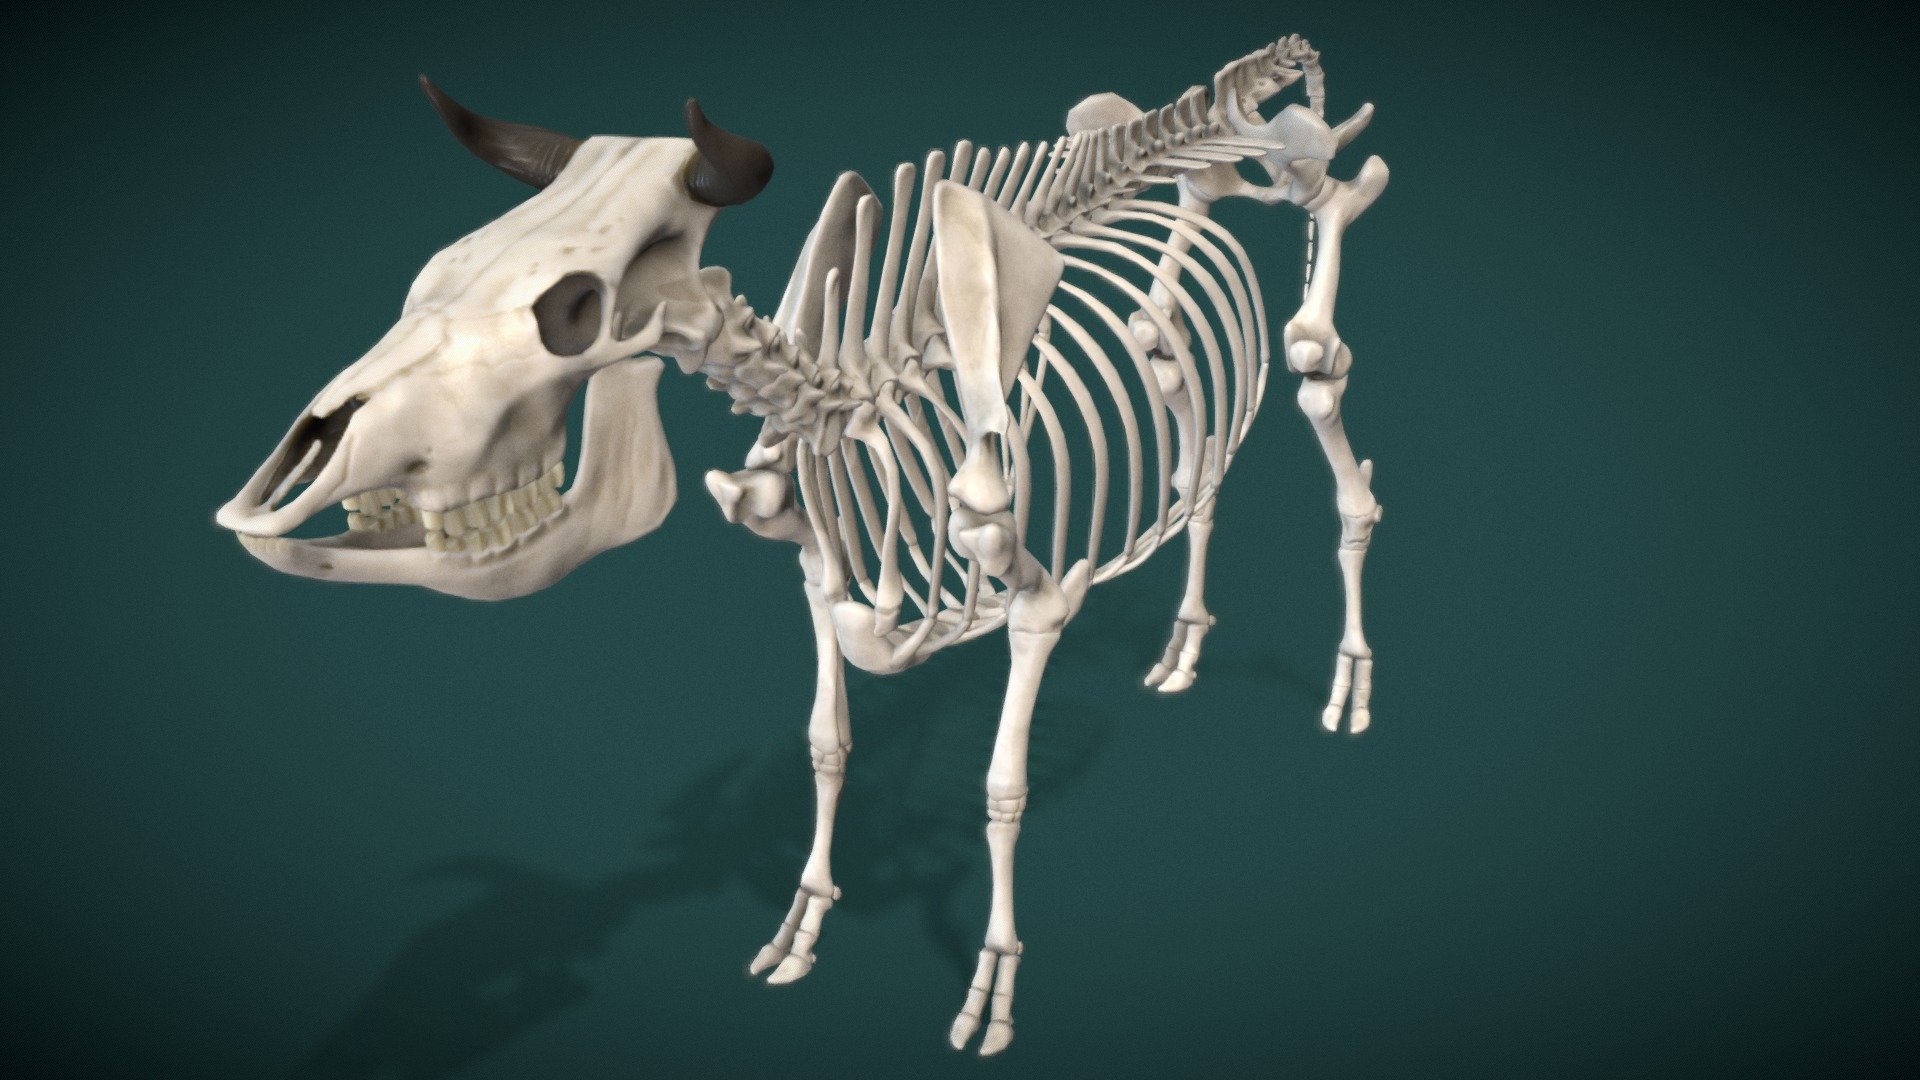 Cow Skeleton 3D model by James.Simon (James.Simon) [90937be] Sketchfab